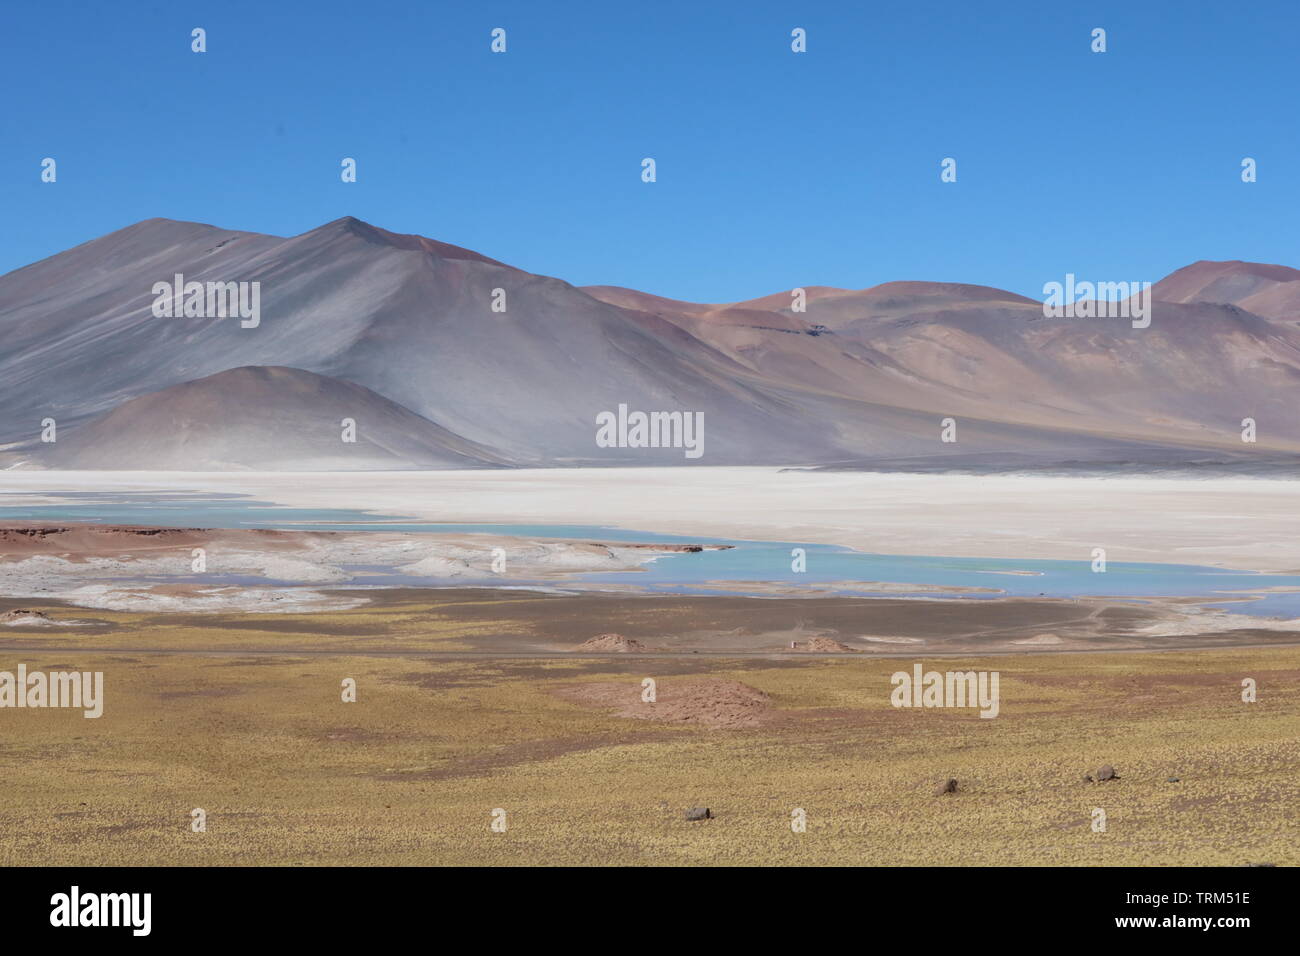 Lagunas Altiplanicas - Deserto de Atacama - Atacama Desert - Antofagasta - Chile Stock Photo